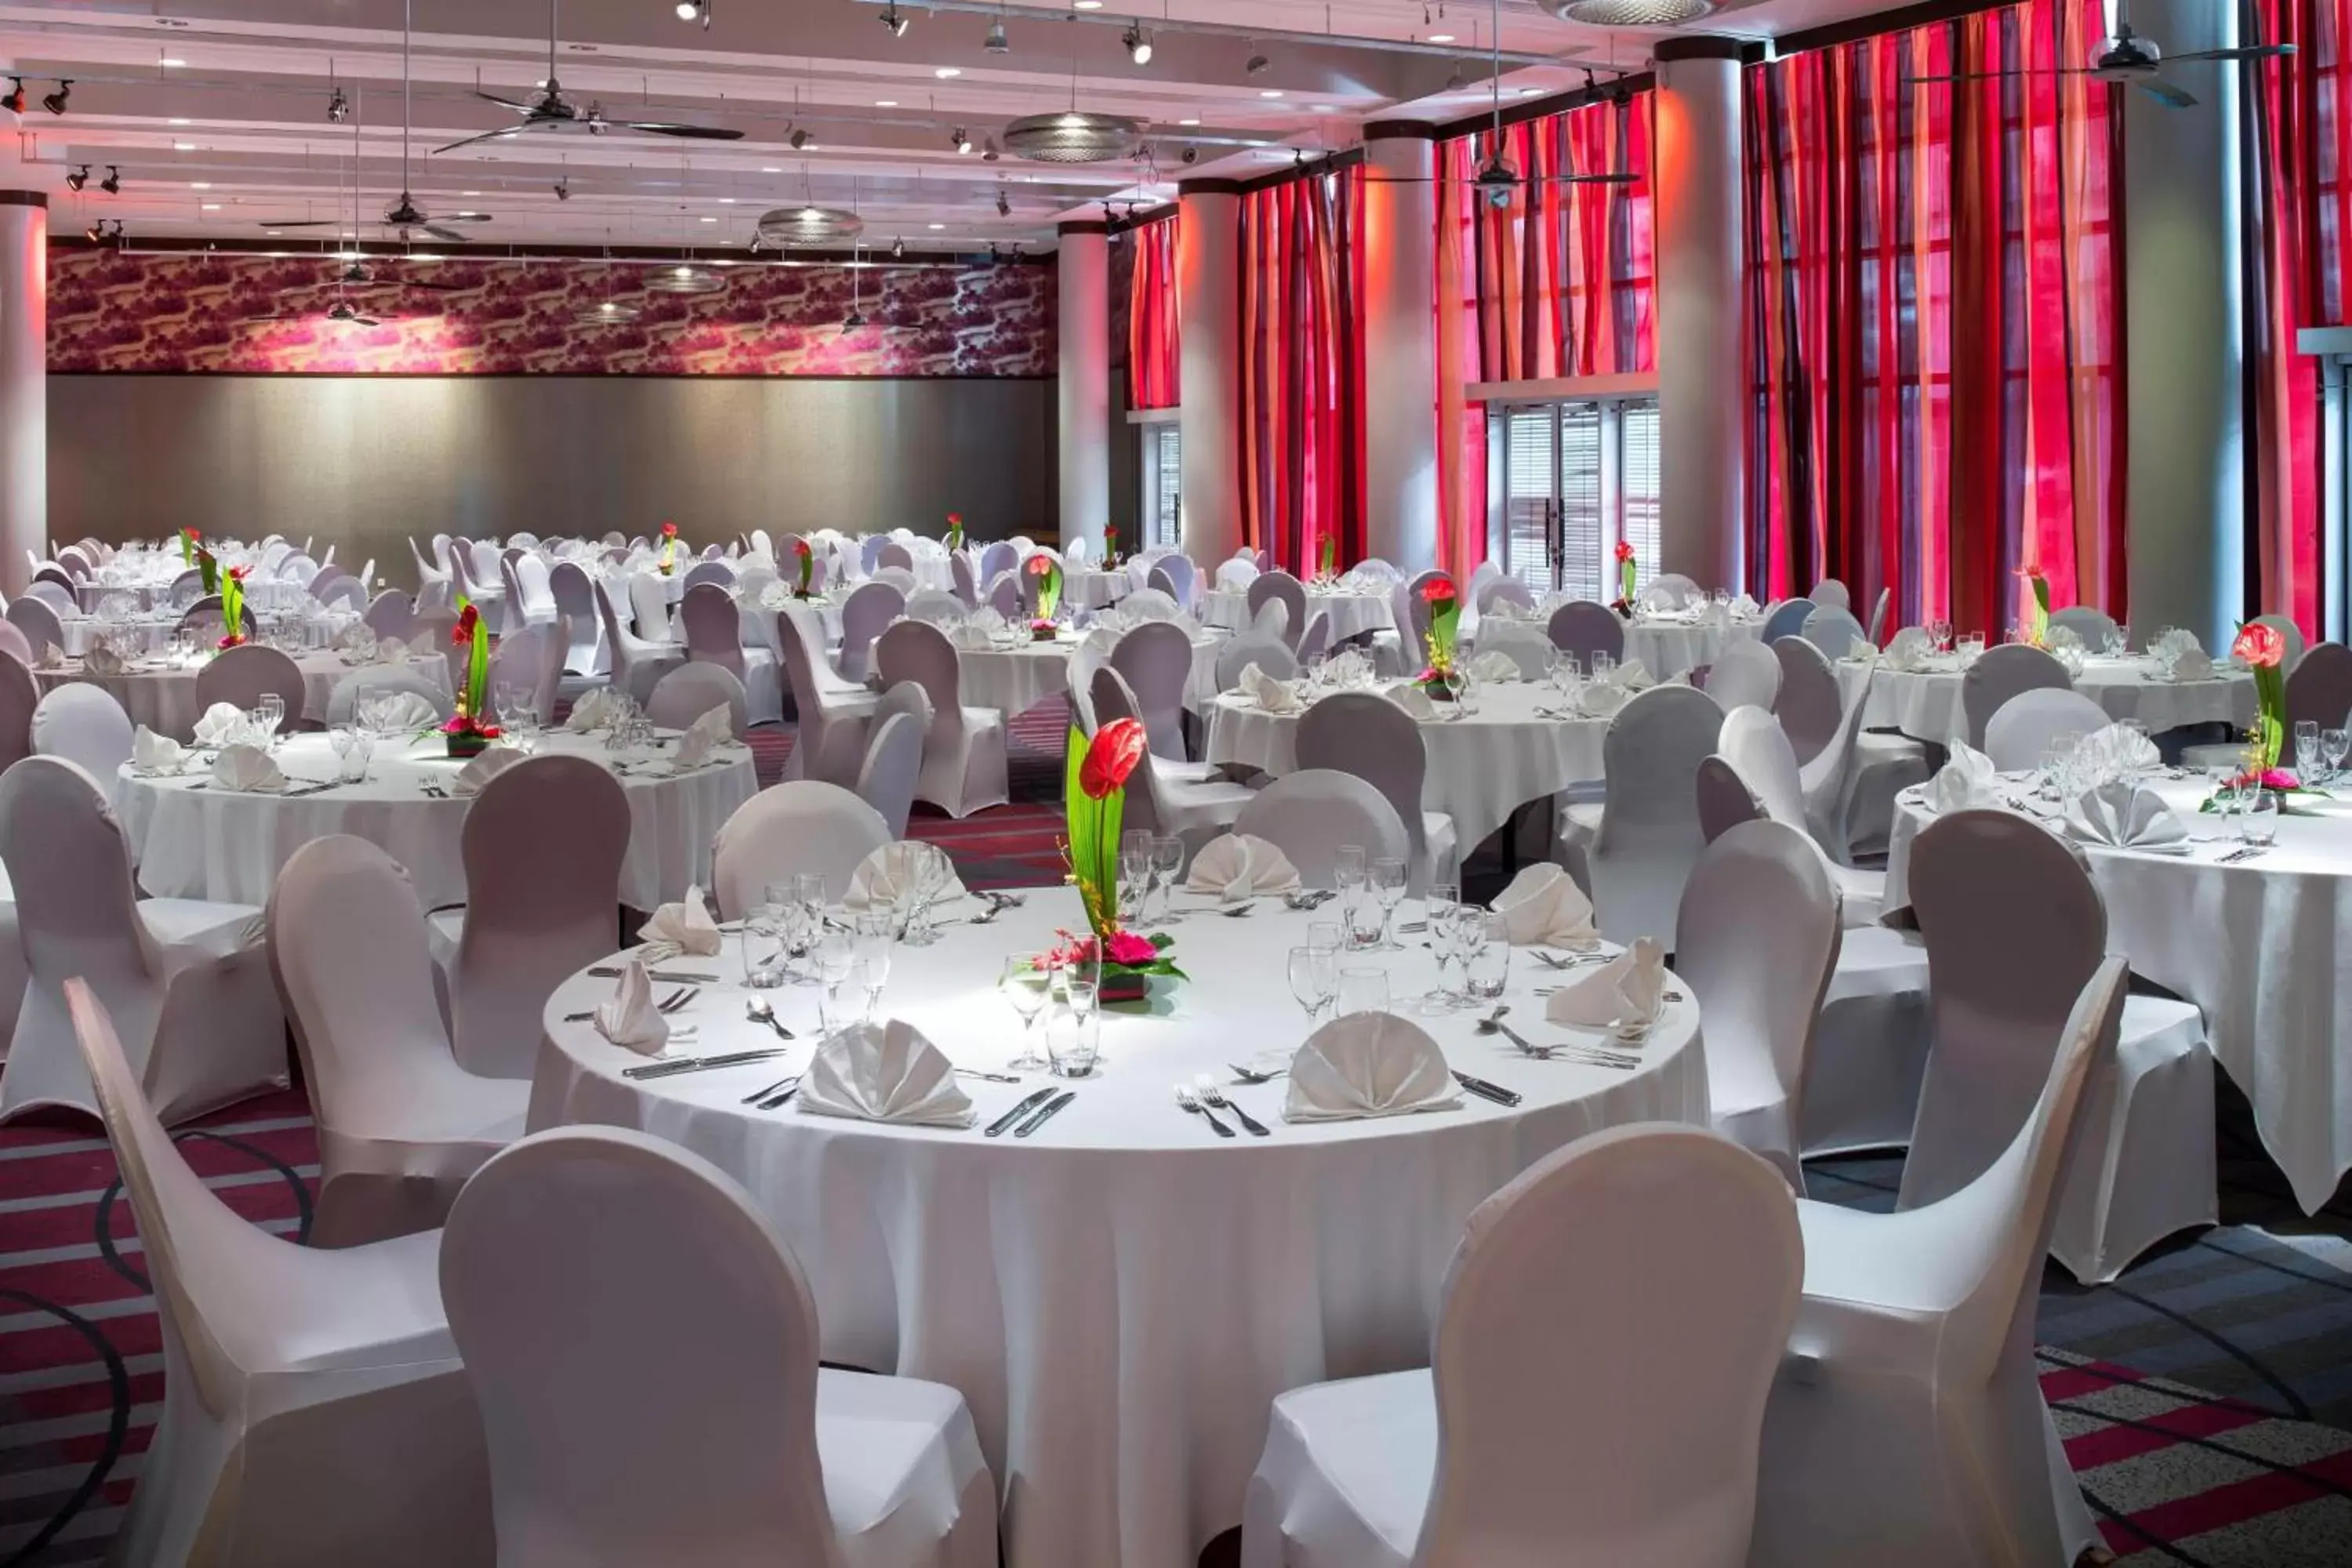 Meeting/conference room, Banquet Facilities in Le Méridien Nouméa Resort & Spa